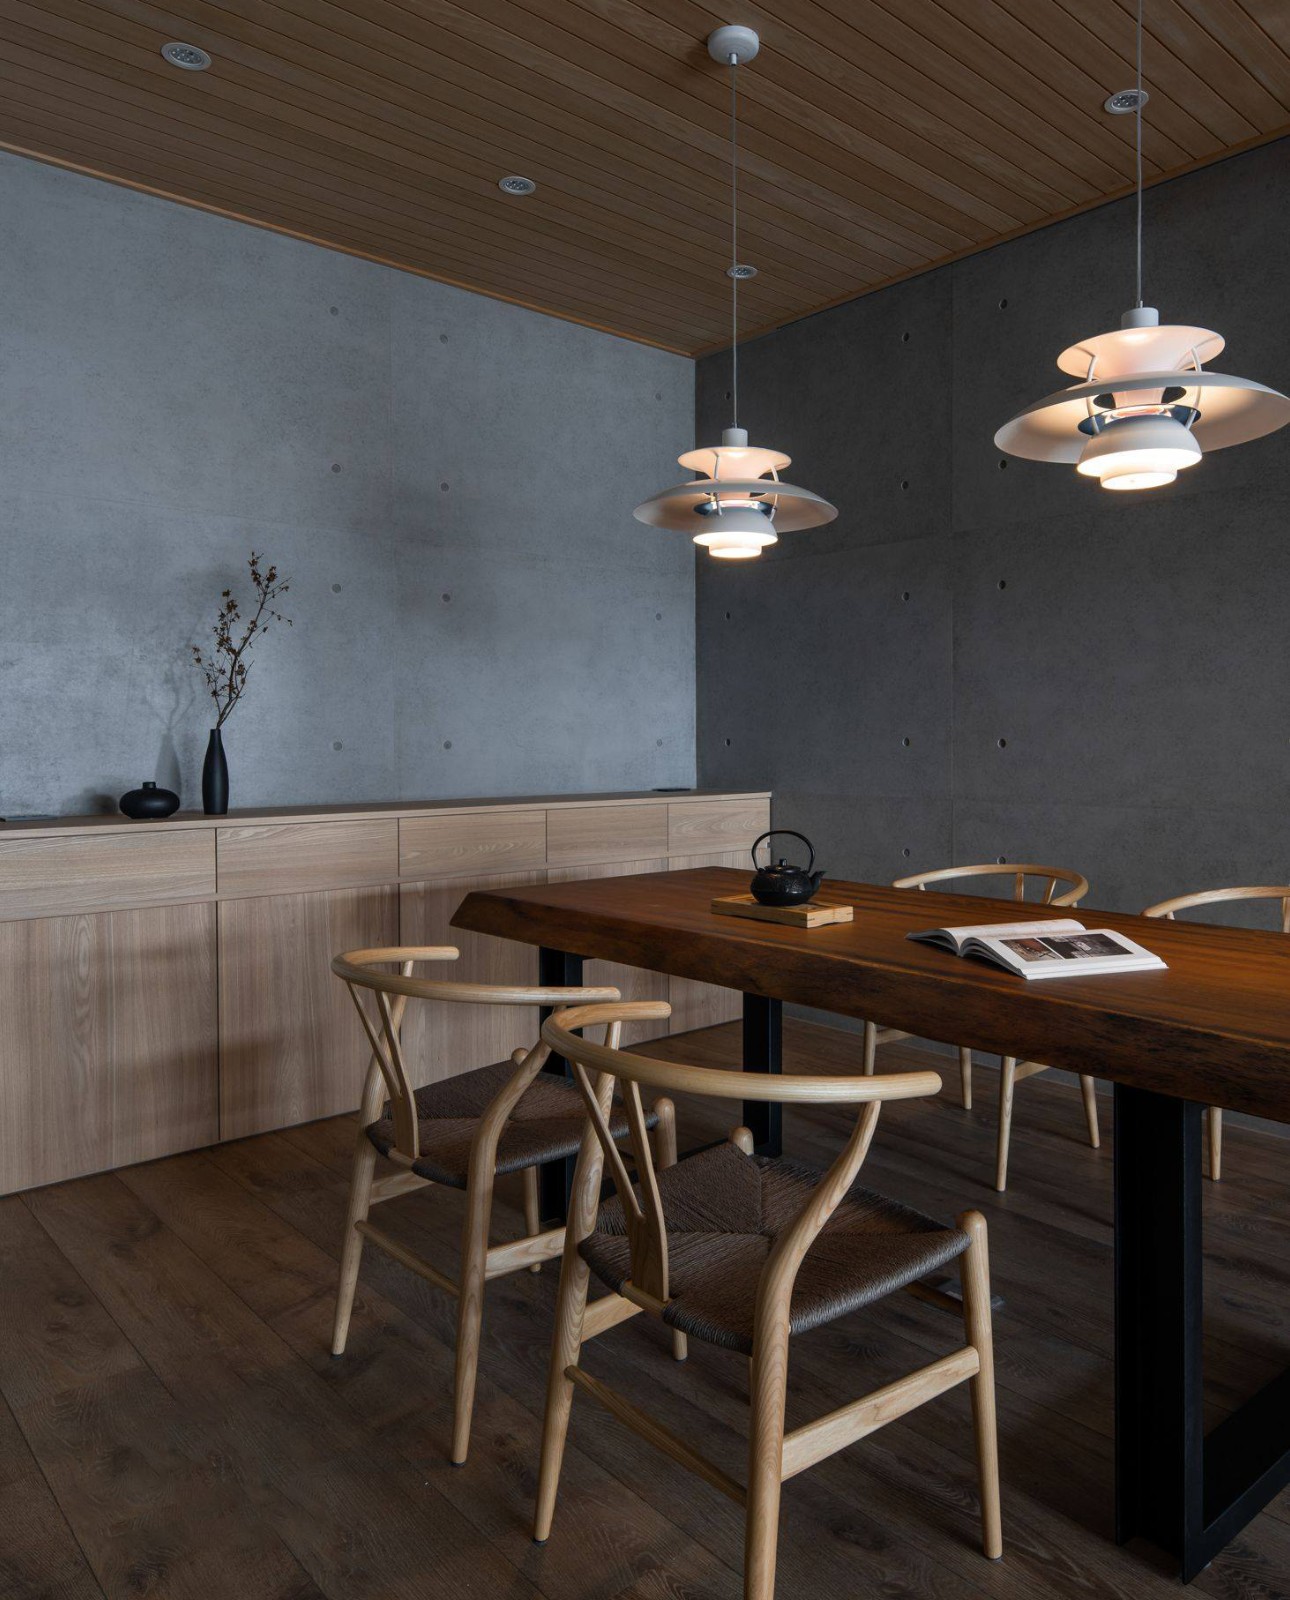 餐厅特选香杉实木为天花板,散发淡淡自然实木香气